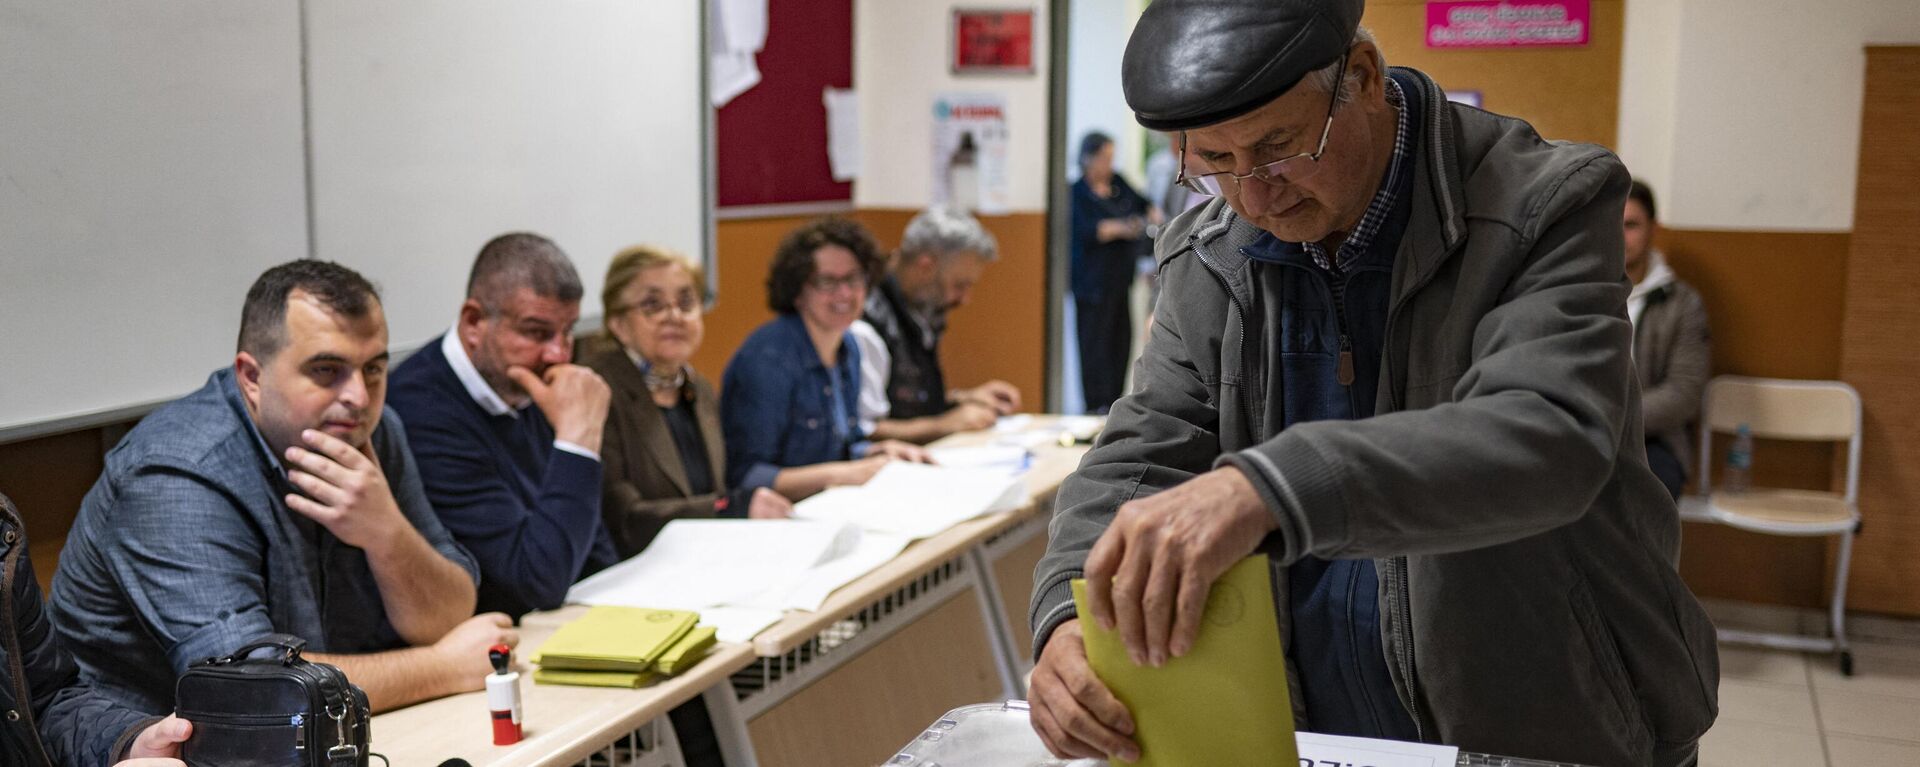 Голосование на президентских выборах в Турции, 14.05.2023 - Sputnik Азербайджан, 1920, 15.05.2023